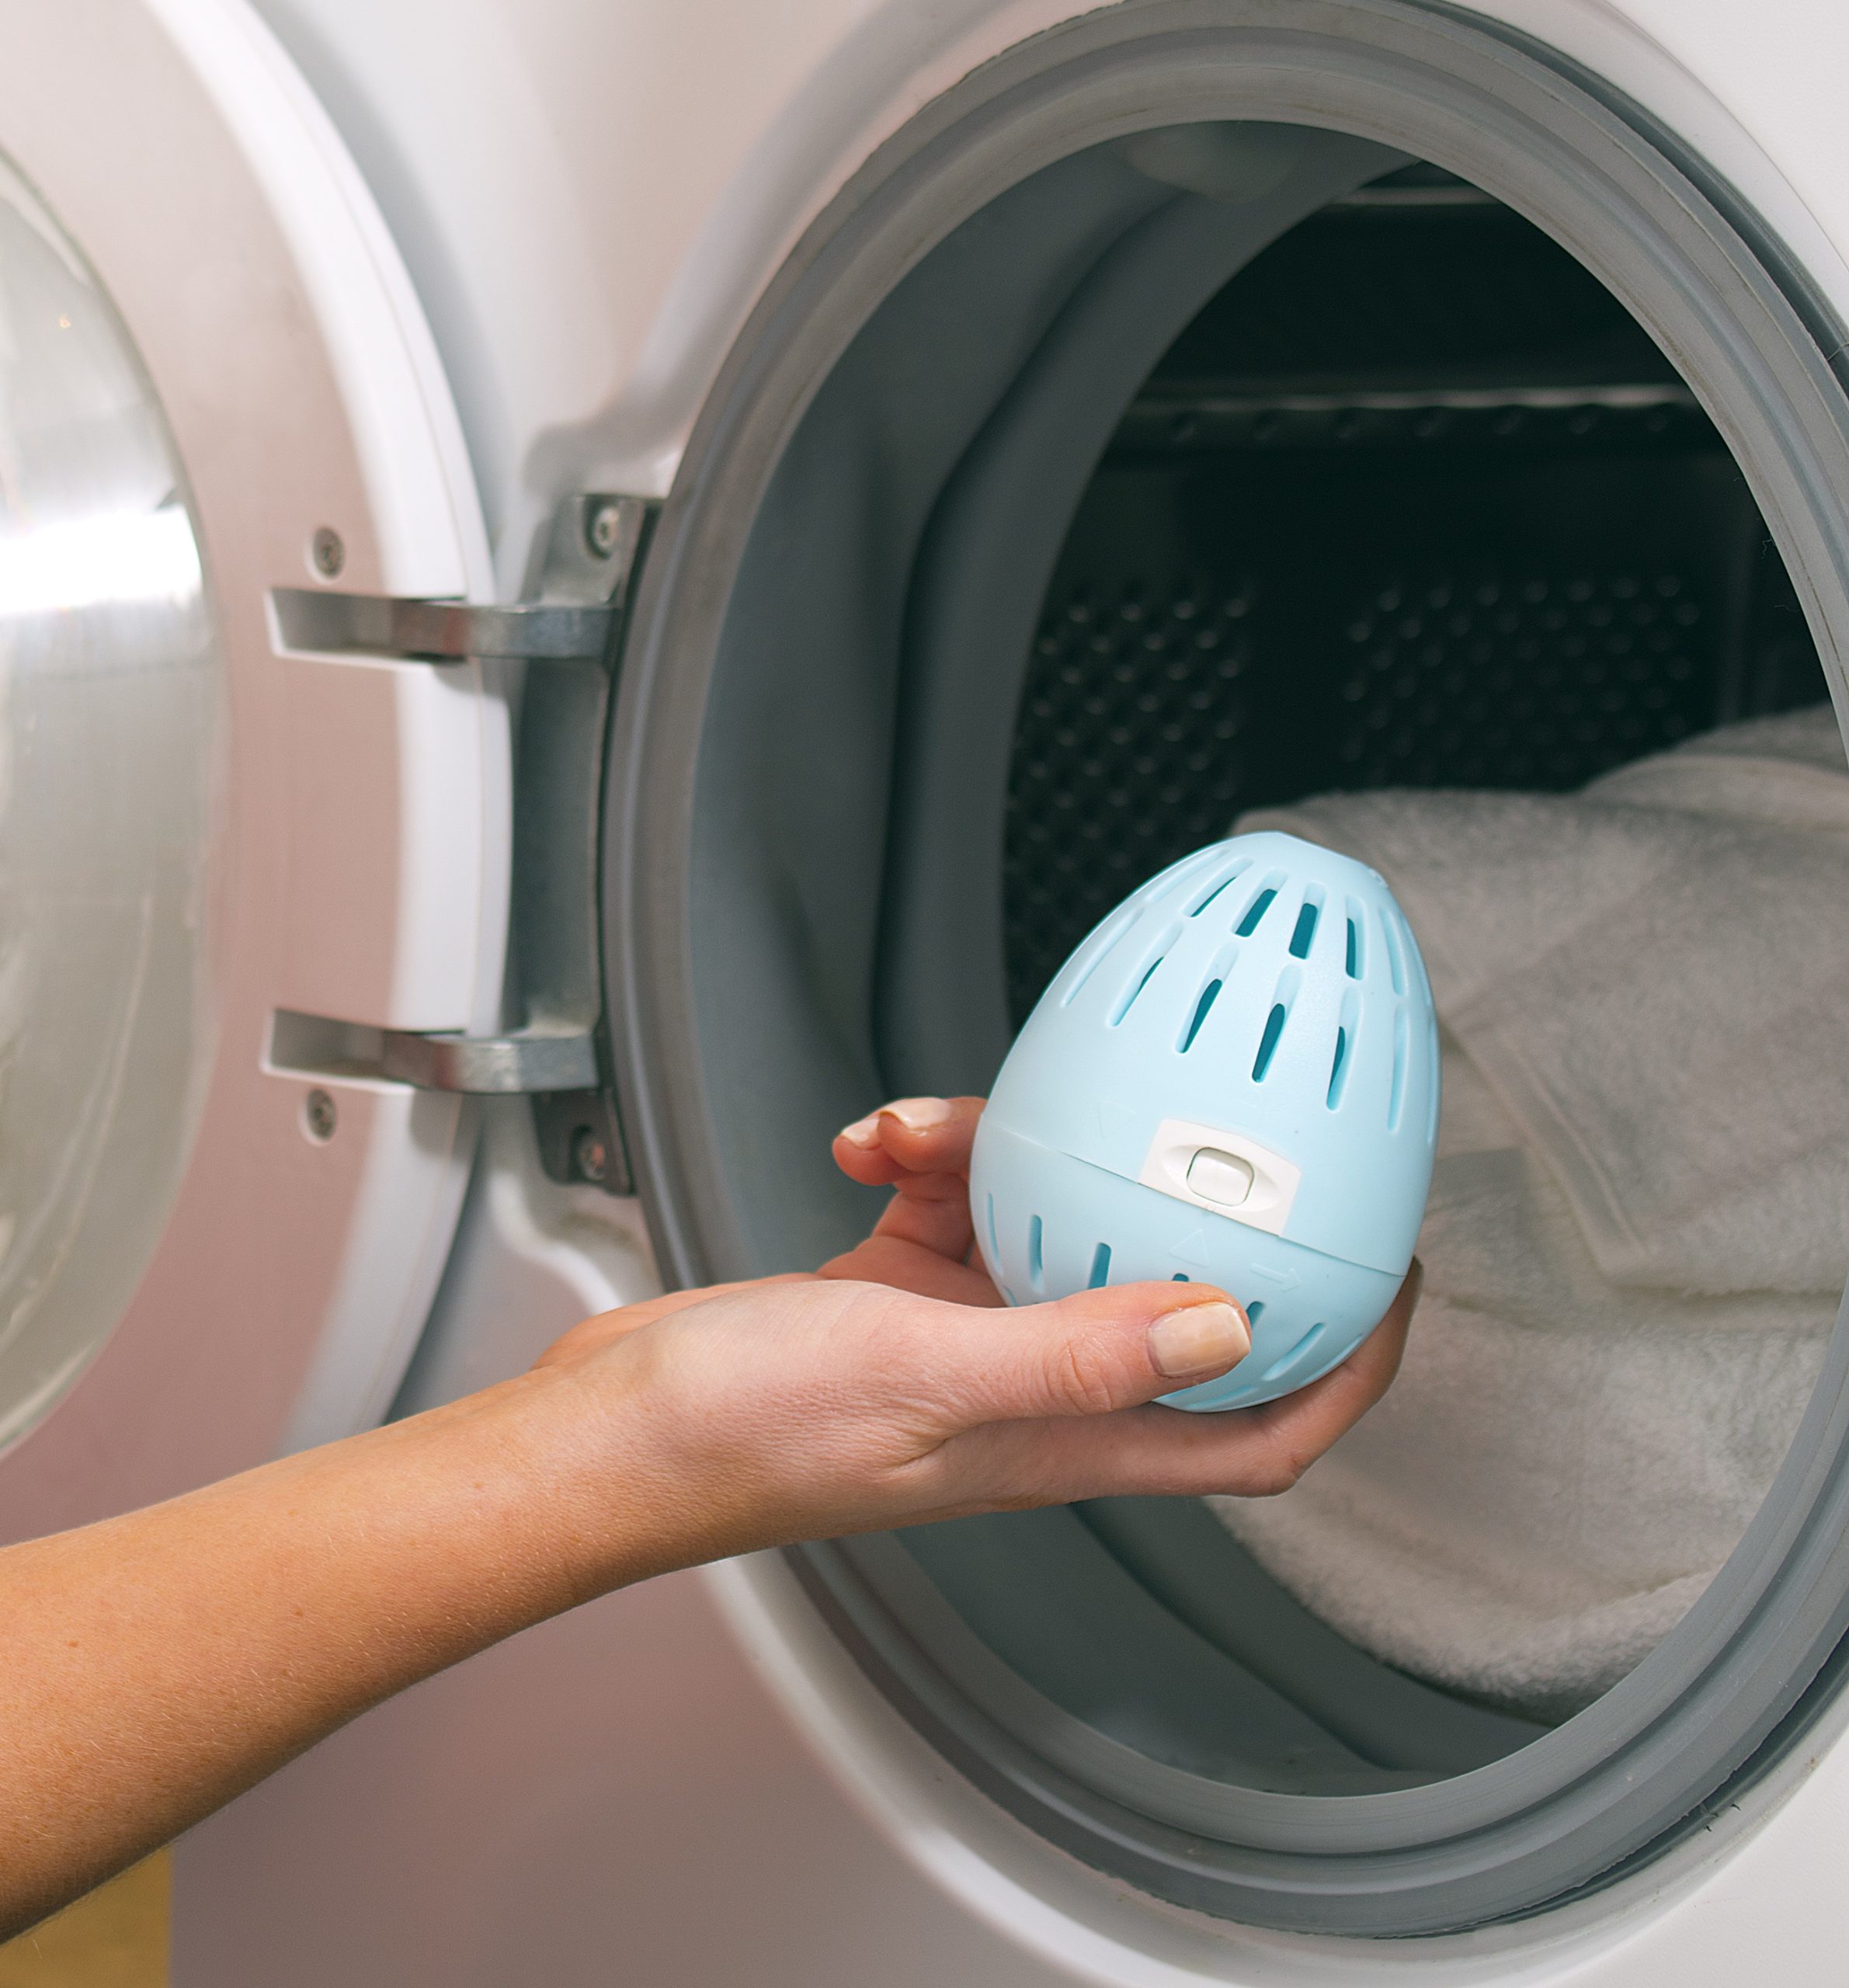 Automatic Egg Washing Machine-automatic egg washer-egg washing equipment